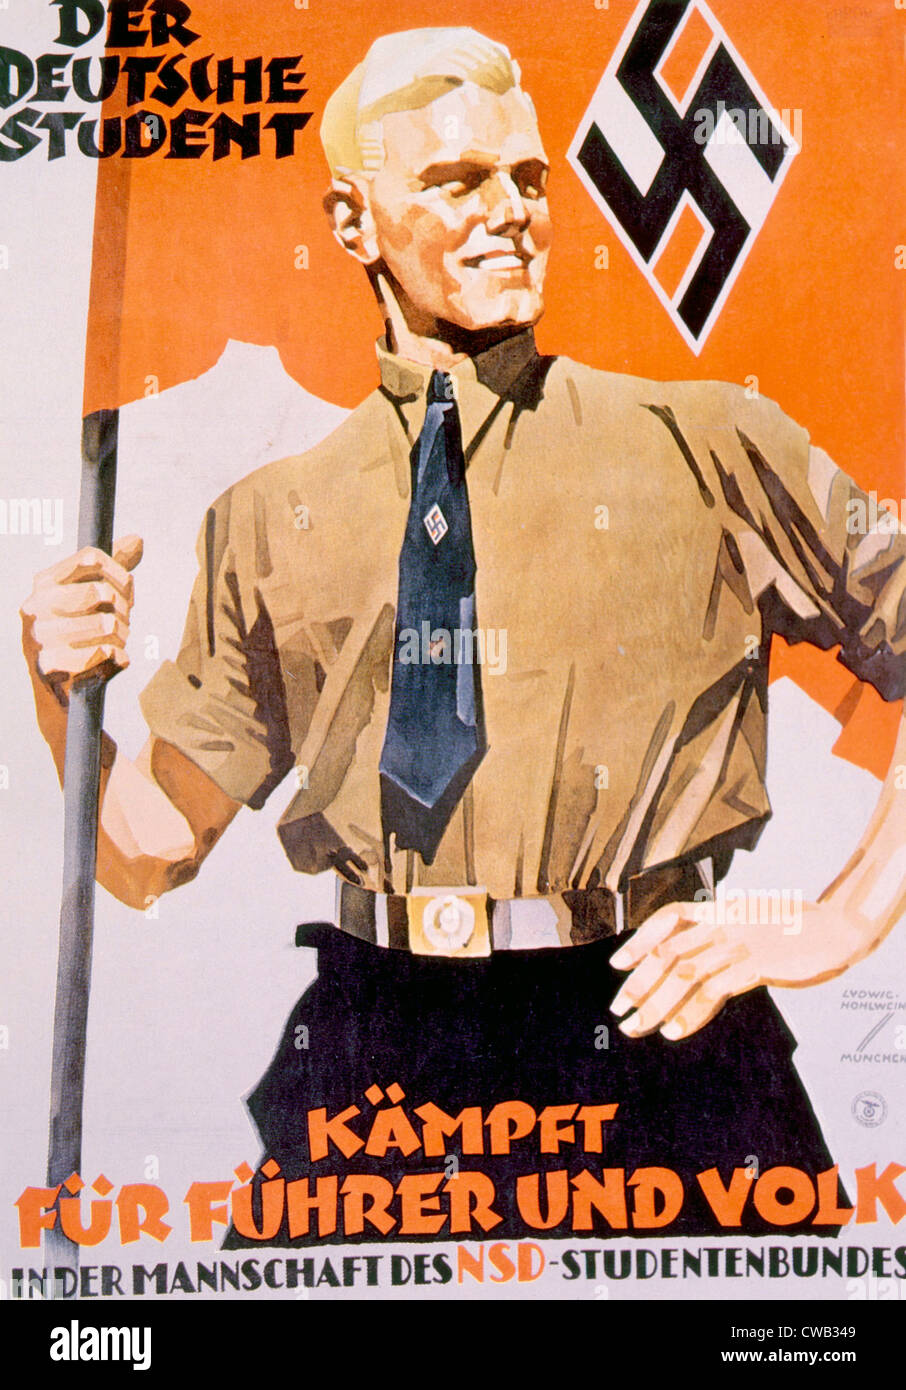 Der deutsche Student kämpft für Führer und Volk in den Körper des National Student Union, Nazi-Plakat, ca. 1939 Stockfoto